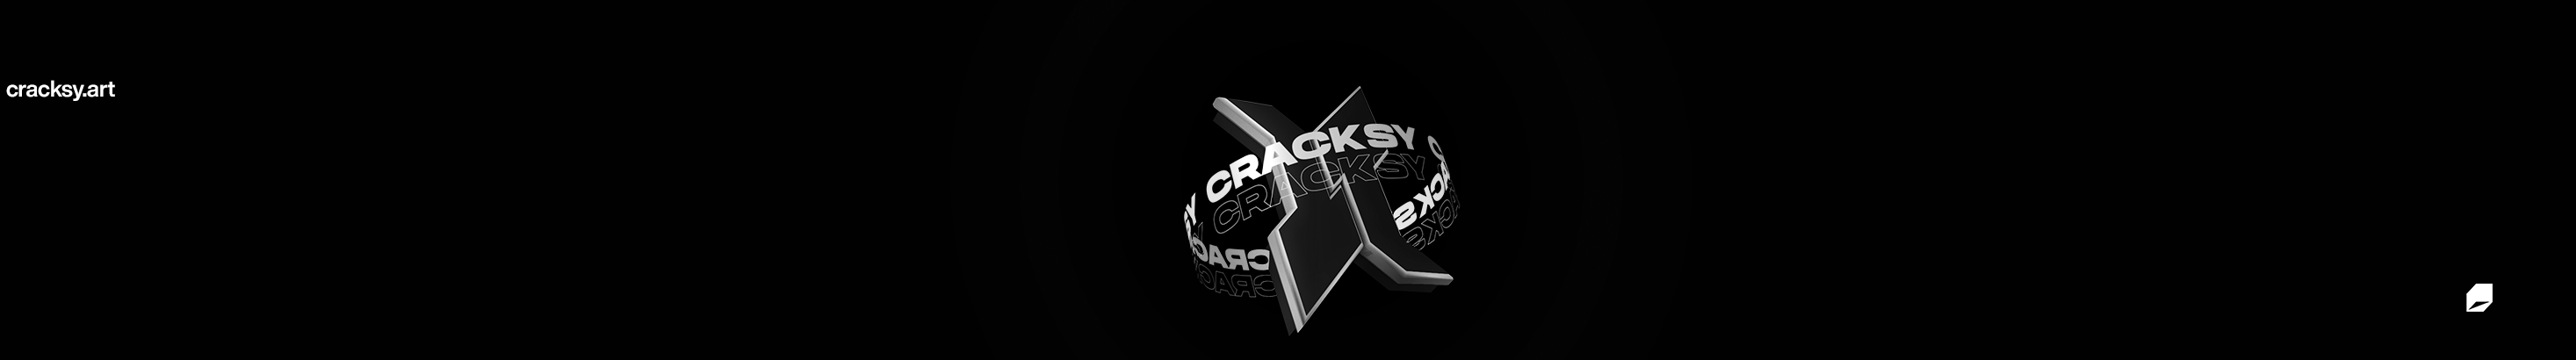 Cracksy Art's profile banner